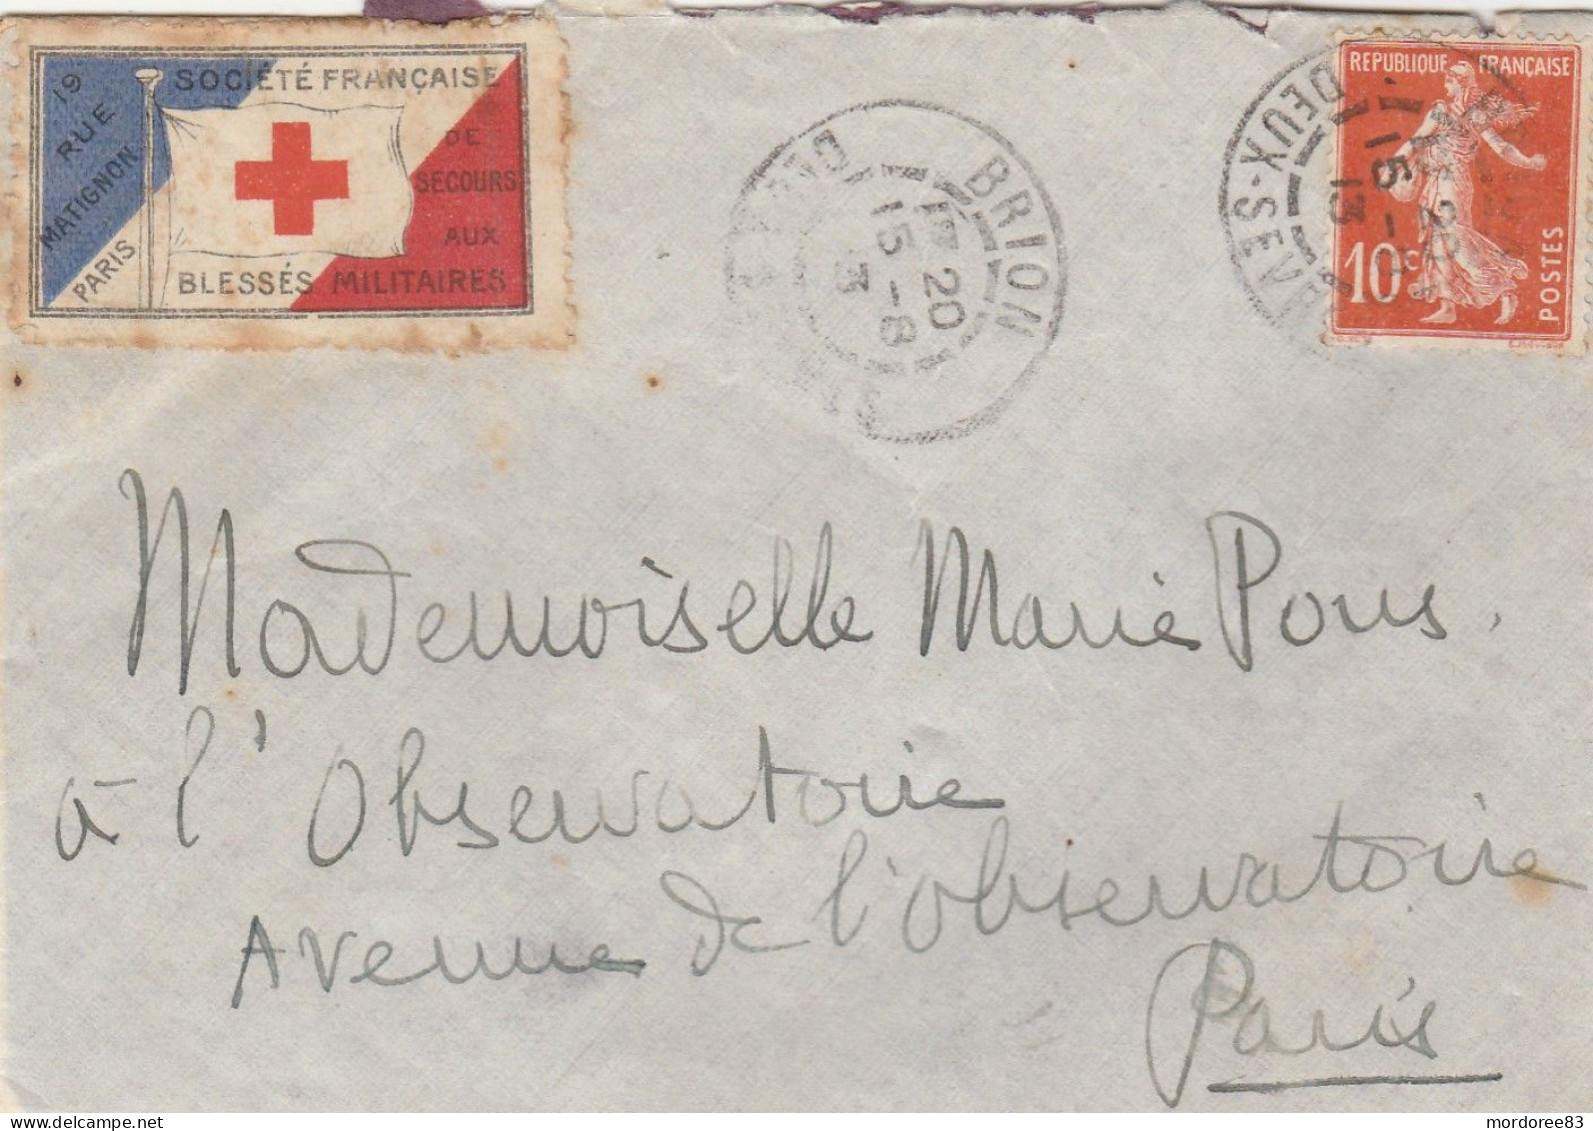 SEMEUSE 10C + VIGNETTE BLESSES MILITAIRES MIGNONETTE BRION DEUX SEVRES 15/8/1913 - Briefe U. Dokumente